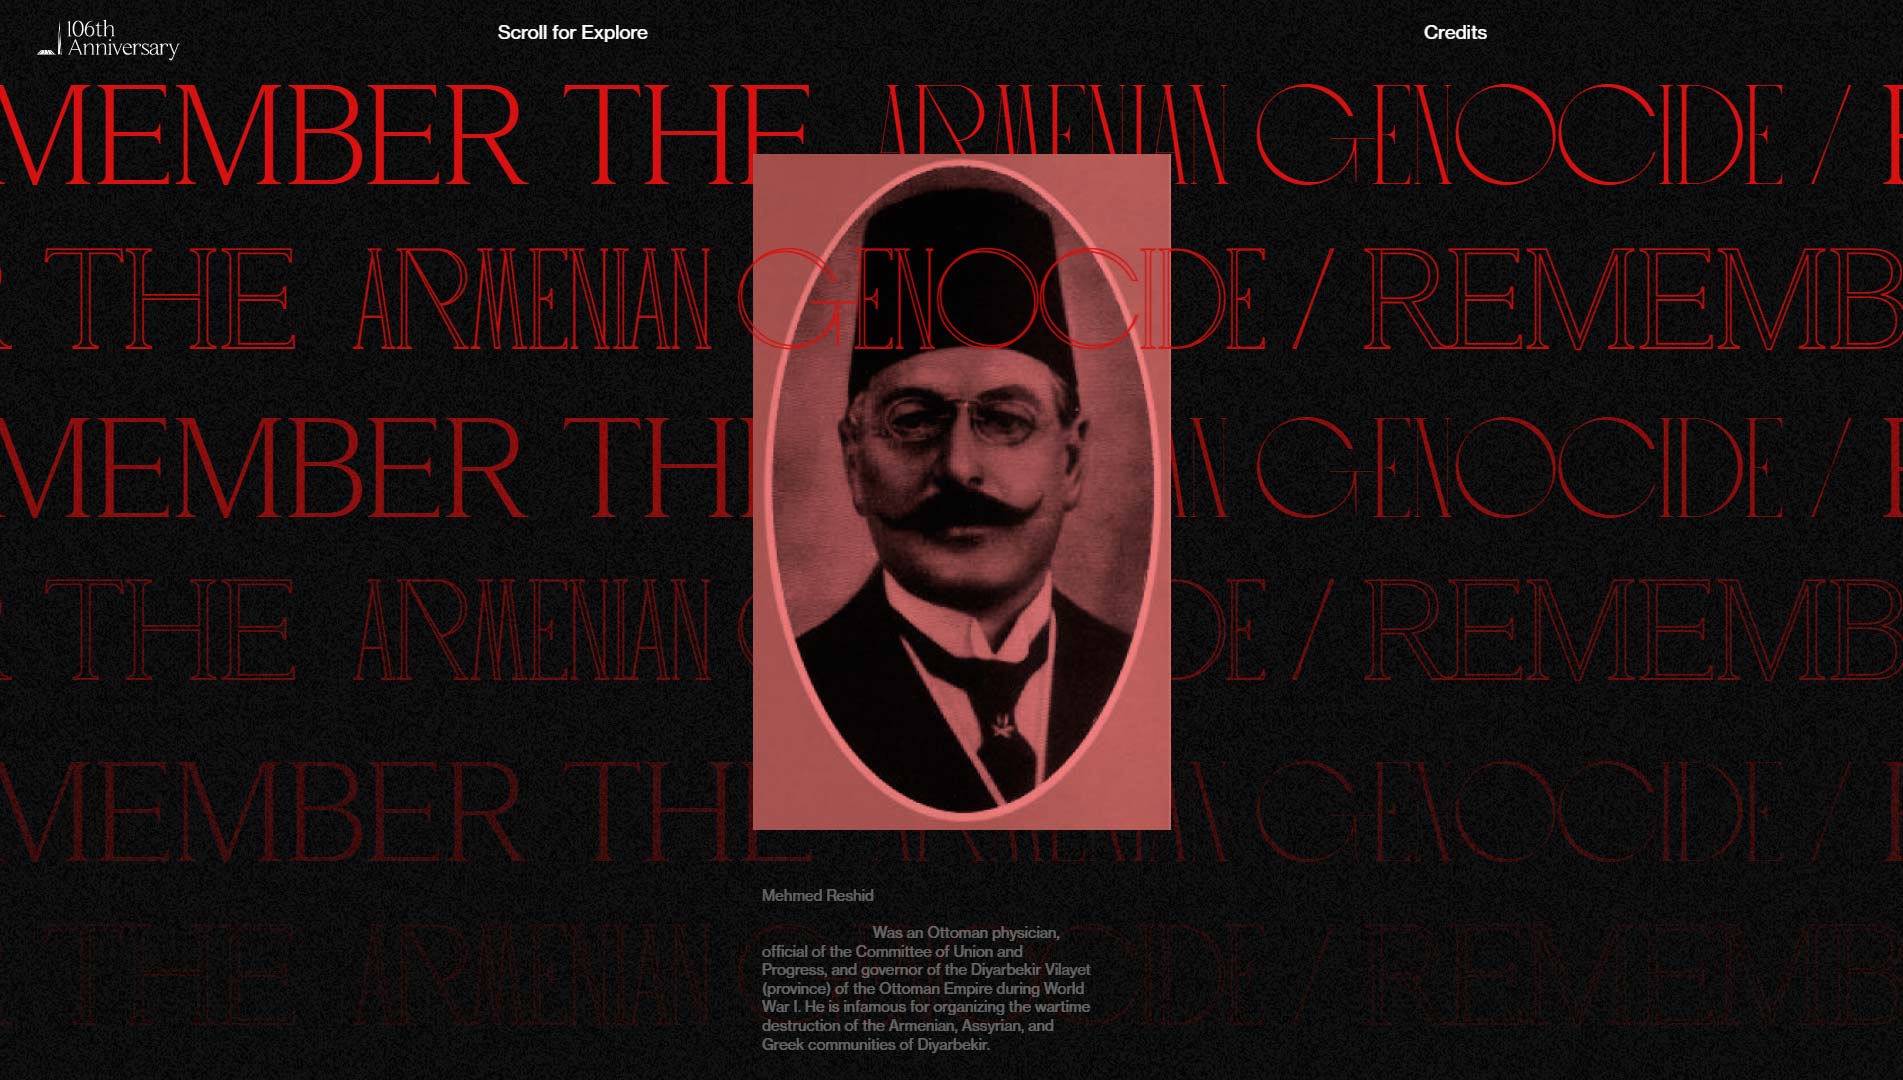 mejores-paginas-web-mes-armenian-genocide-01